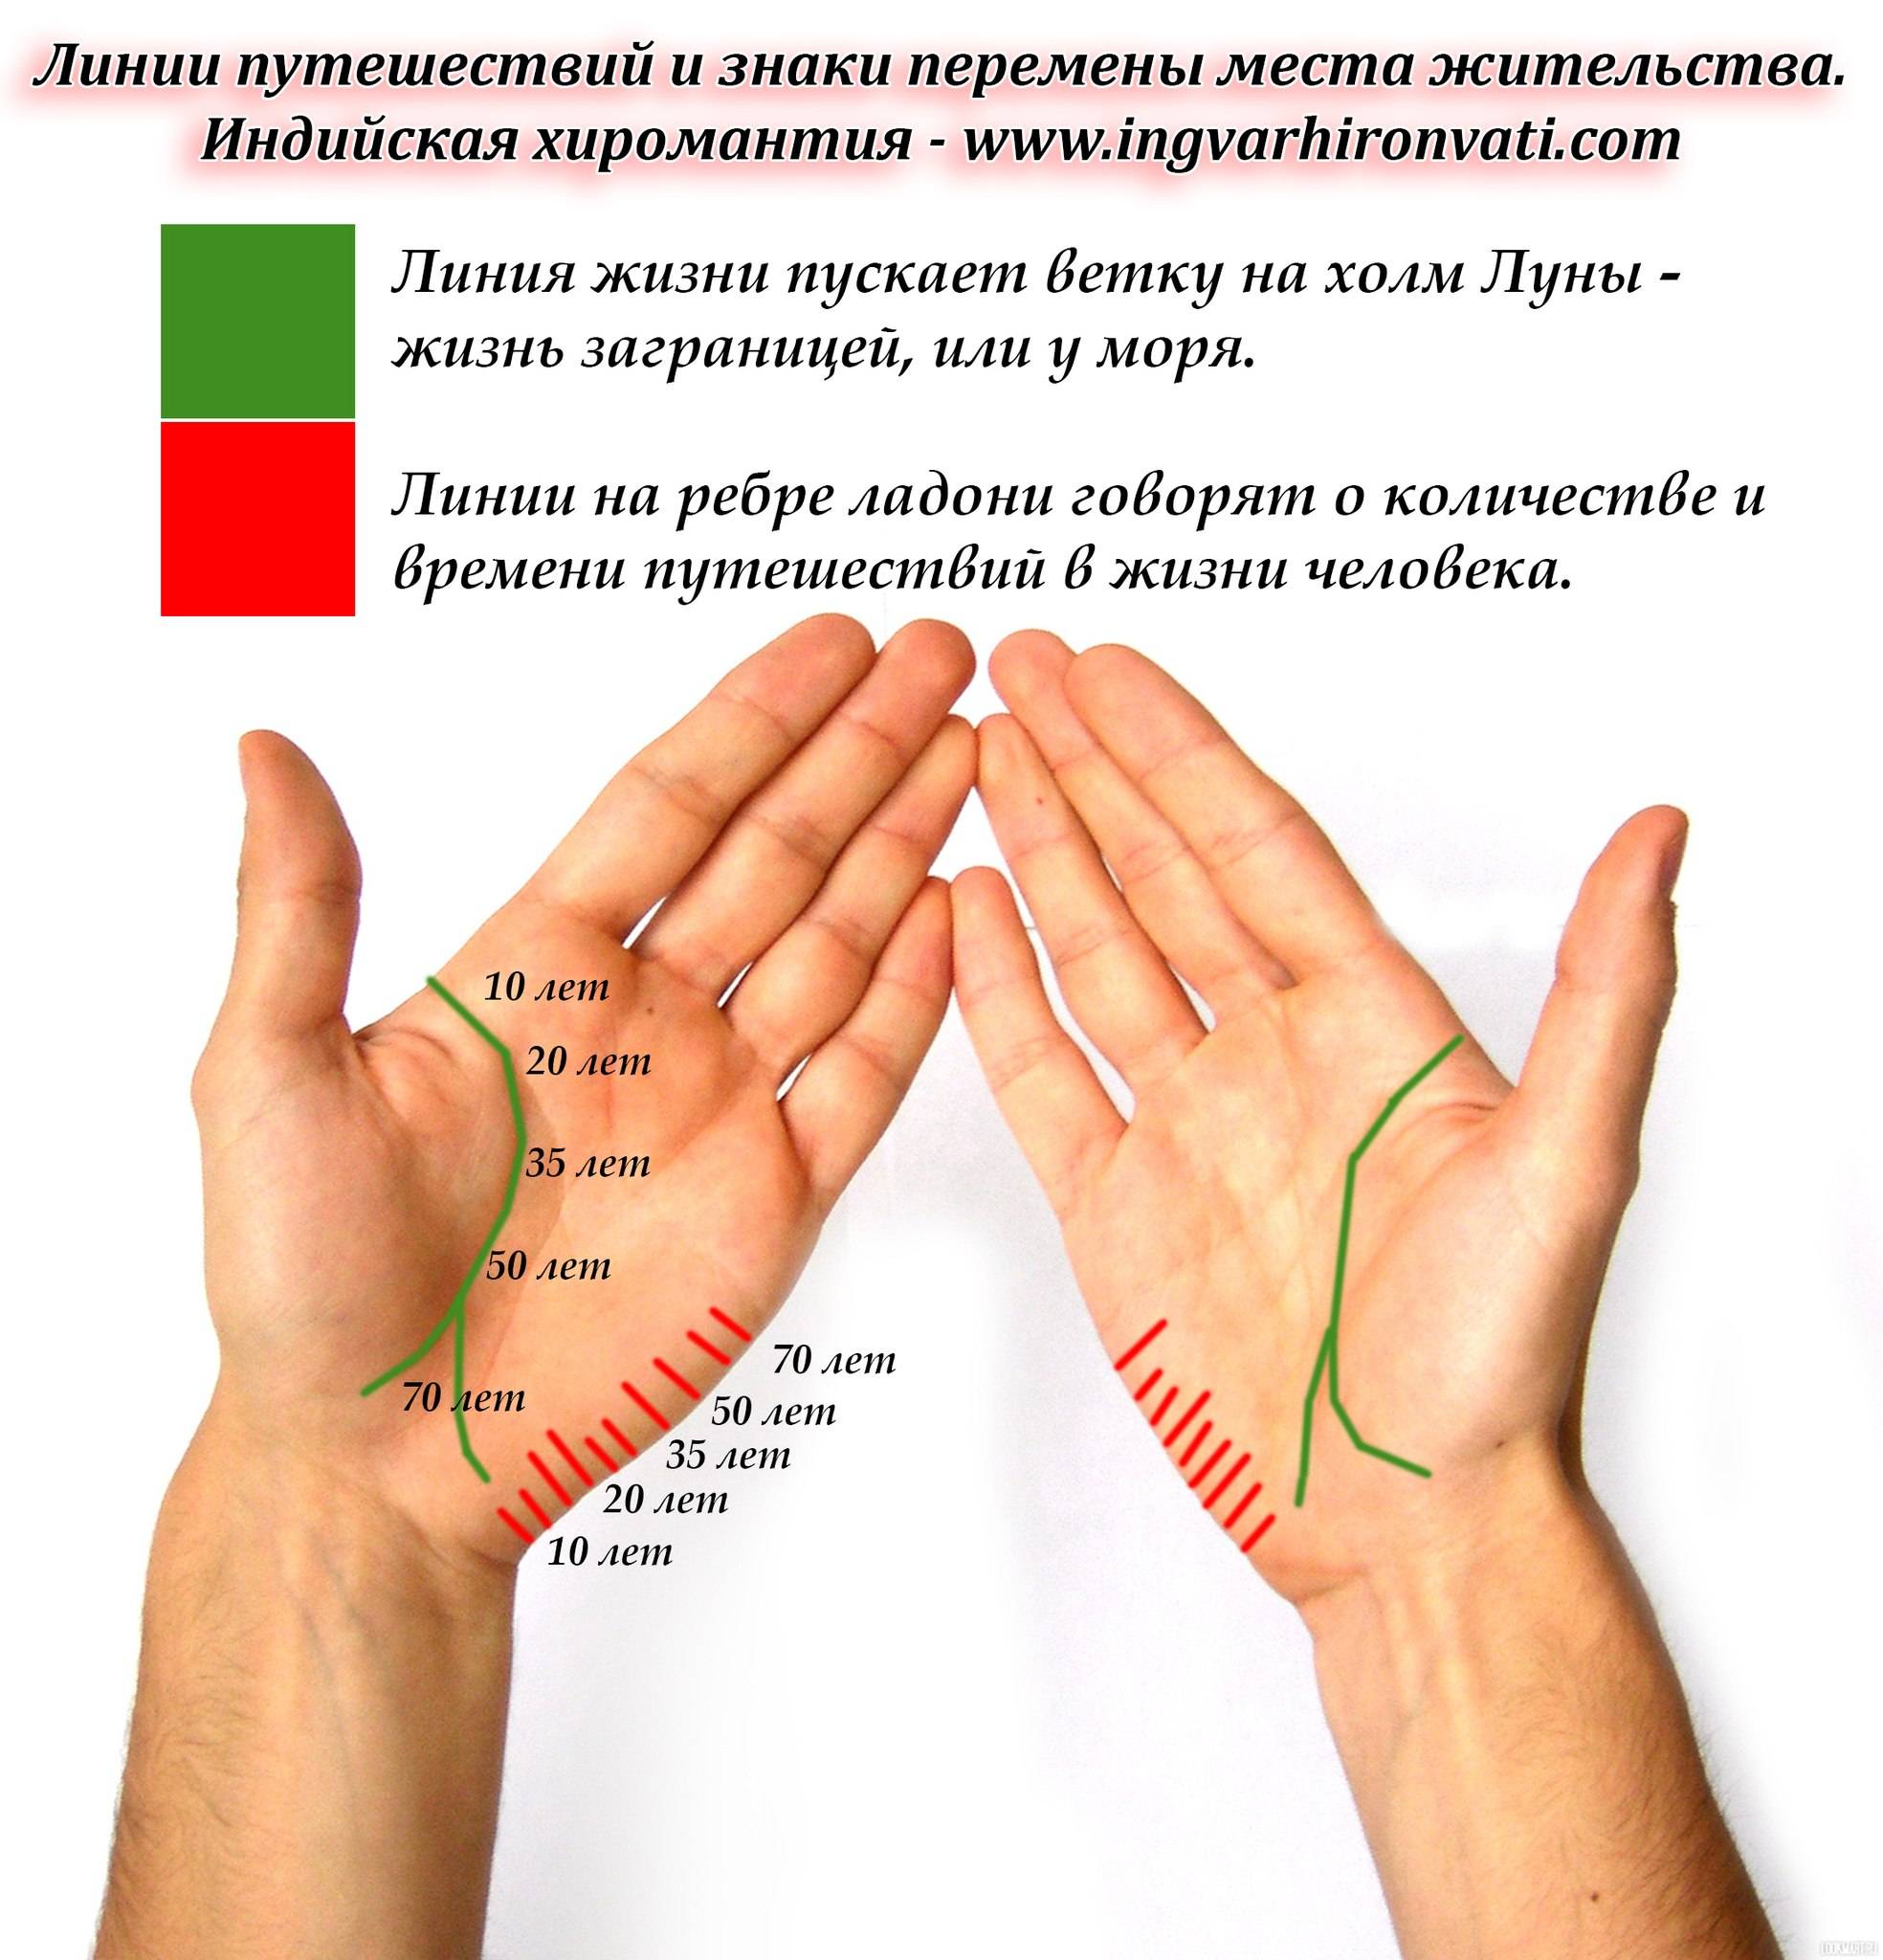 Хиромантия расшифровка линий на руке с фото бесплатно